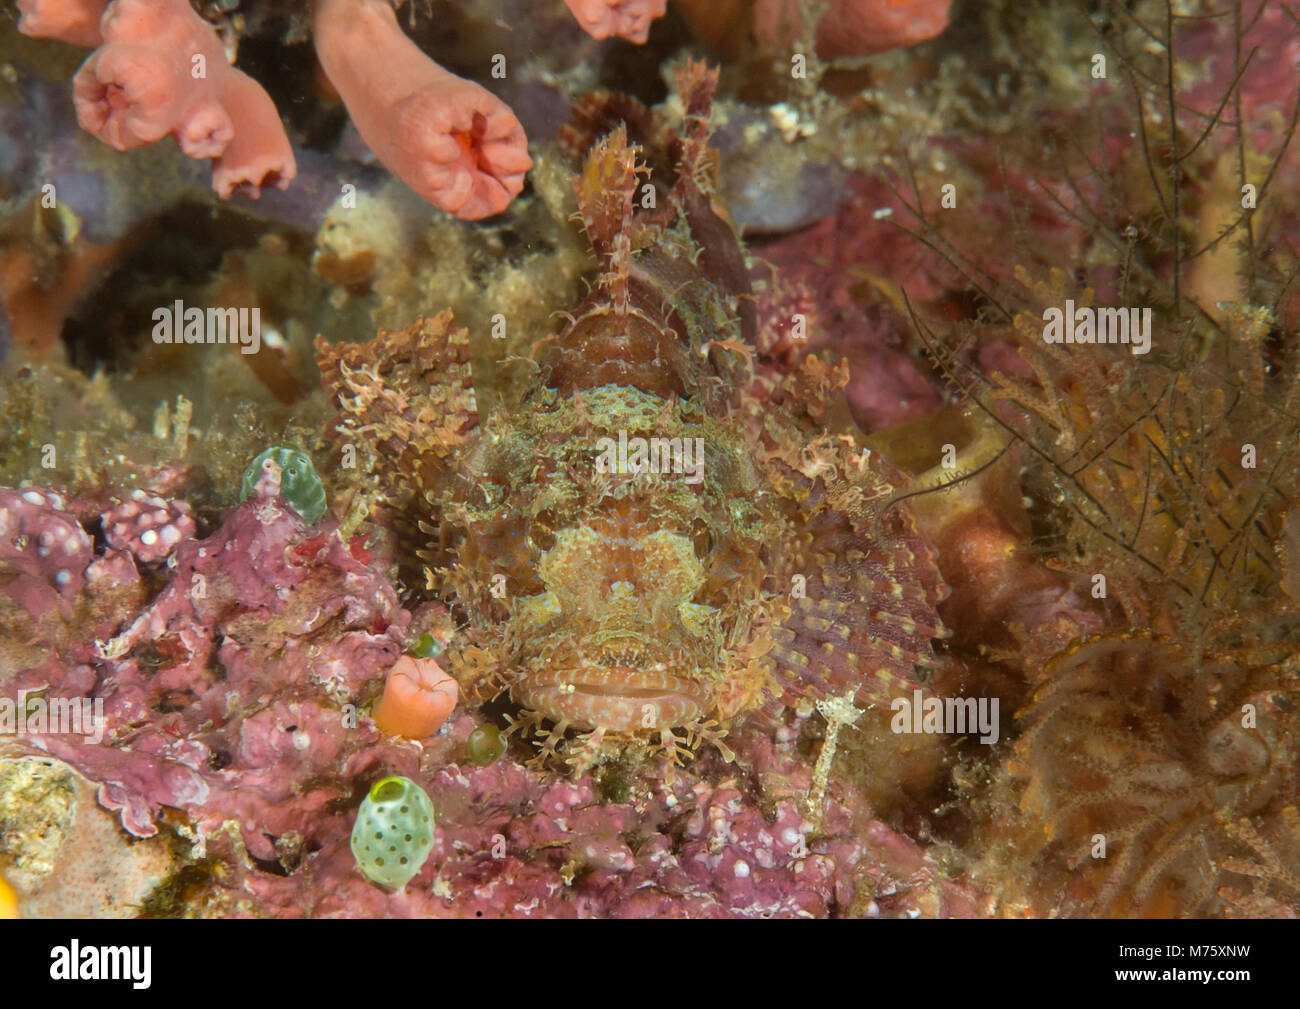 Bearded Scorpionfish , scorpaenopsis barabatus rests on coral, camouflage, Bali Stock Photo